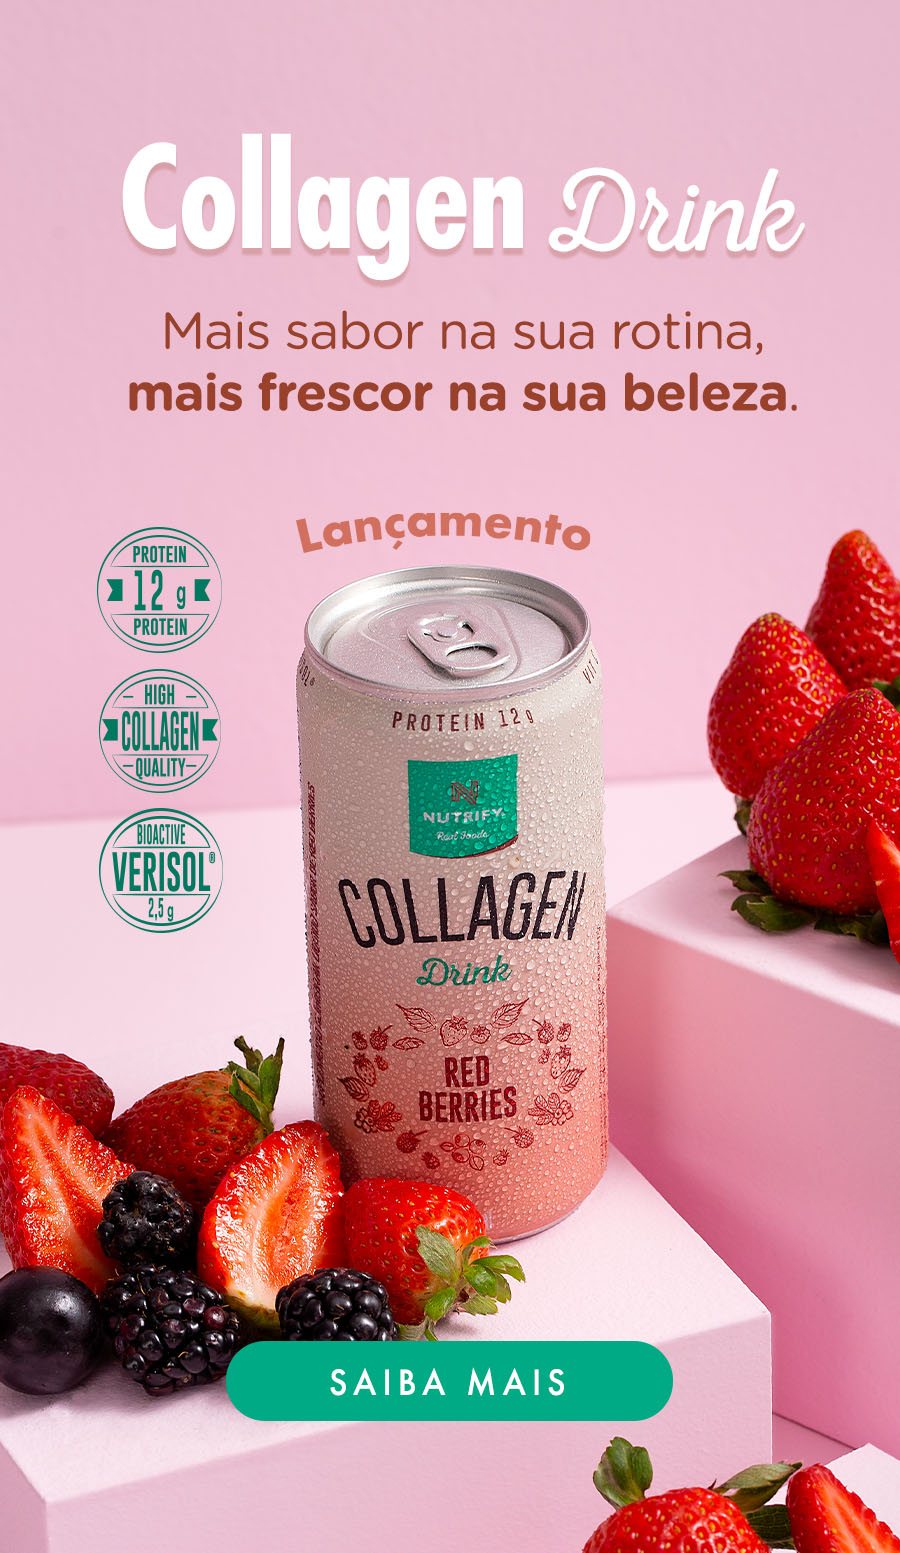 Collagen drink - Novo sabor 2